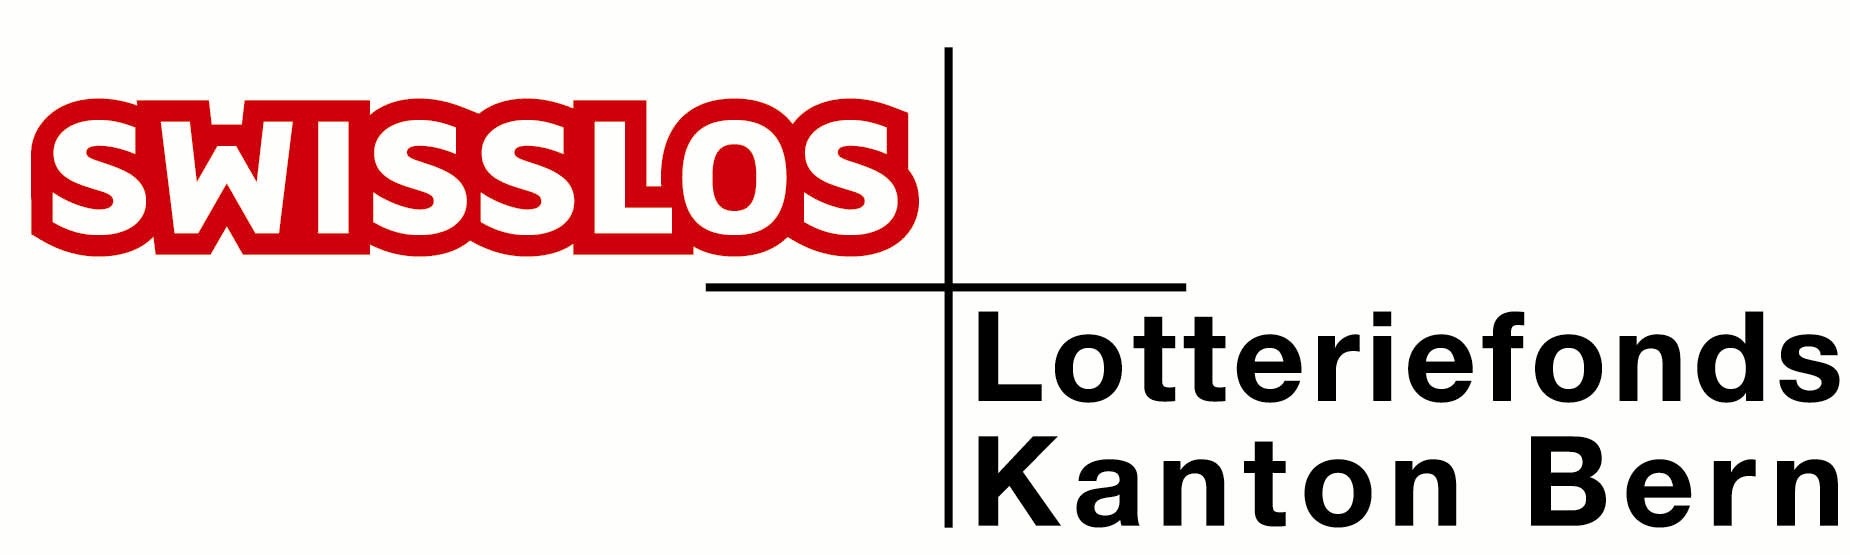 Lotteriefonds-kt-bern